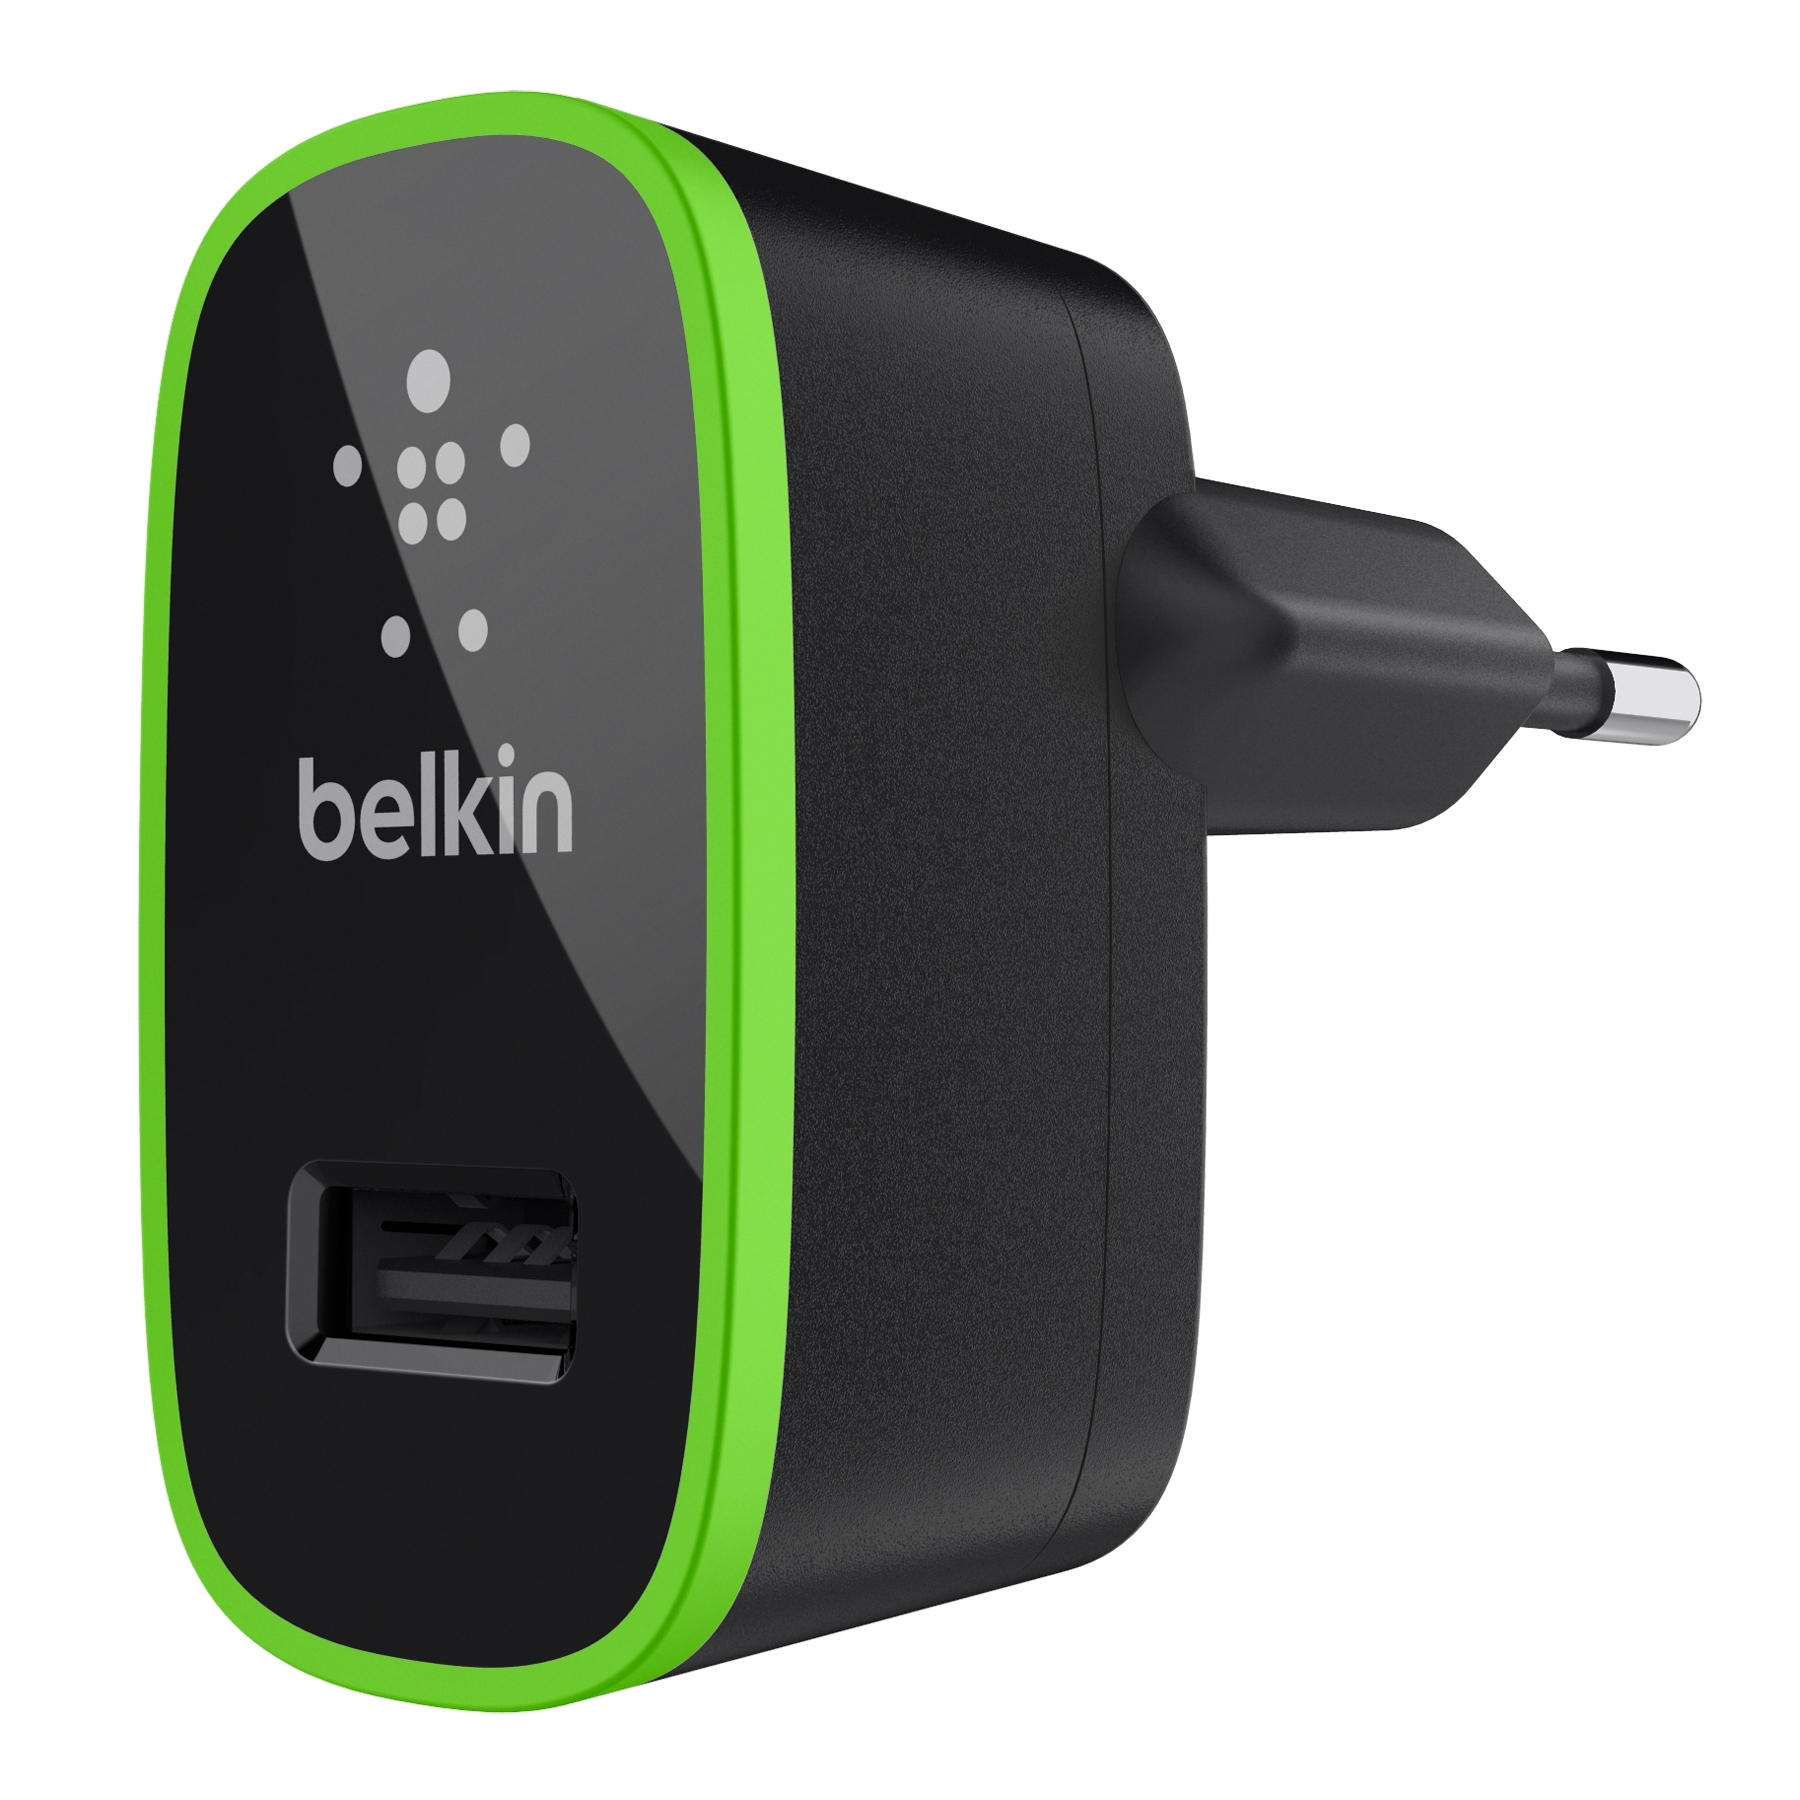 Belkin USB Main Charger 2.1A - захранване с USB 2.1А изход за мобилни устройства (черен)